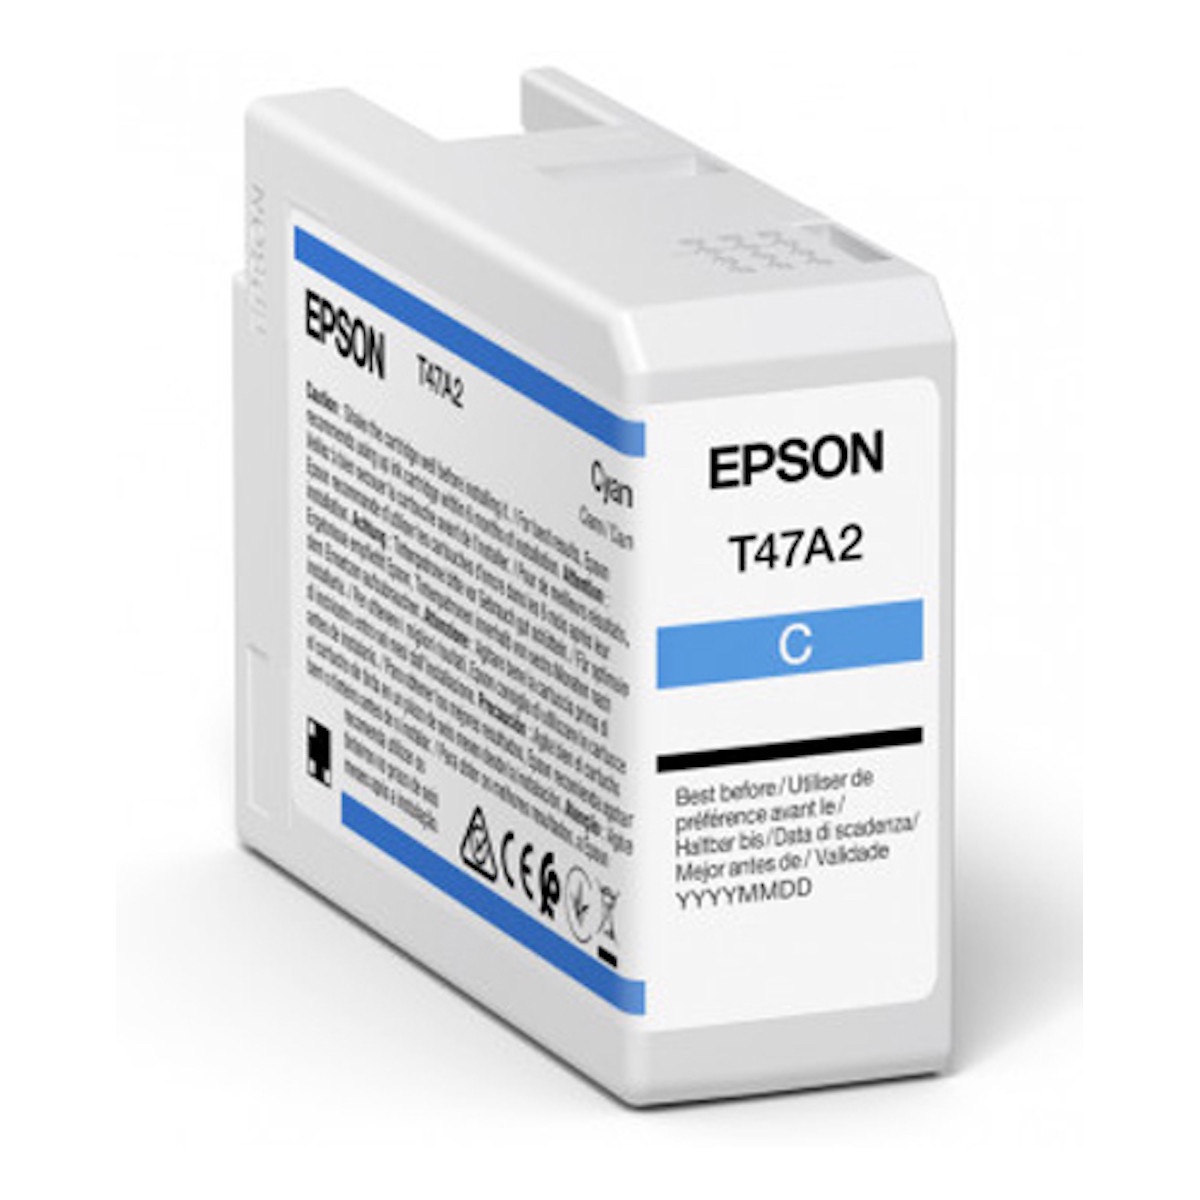 Epson T47A2 cyan Tinte